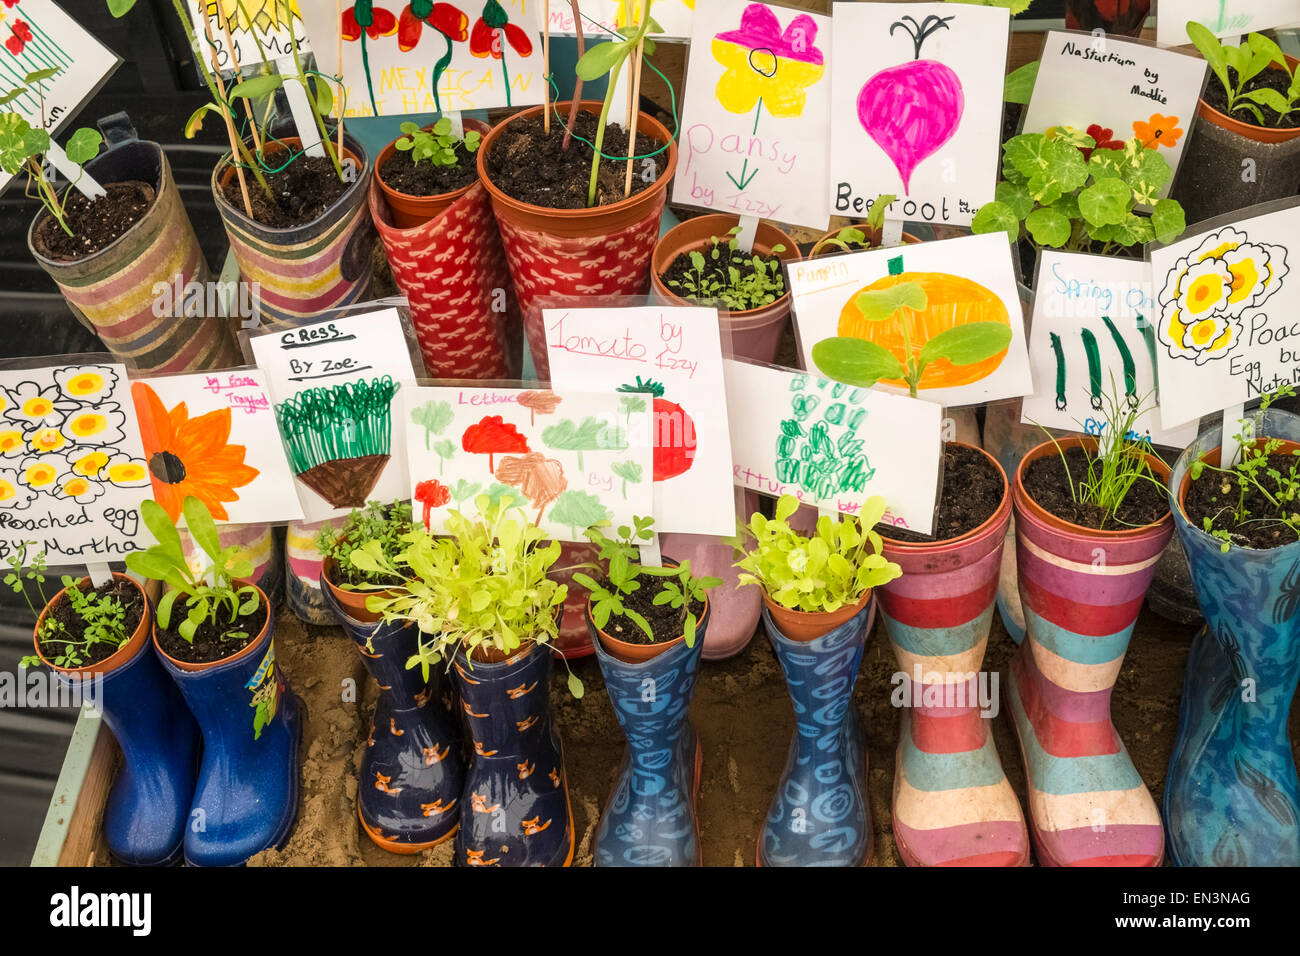 Contenedor de jóvenes plantas cultivadas por los niños en coloridas botas Wellington, con etiquetas descriptivas adjuntas. Foto de stock